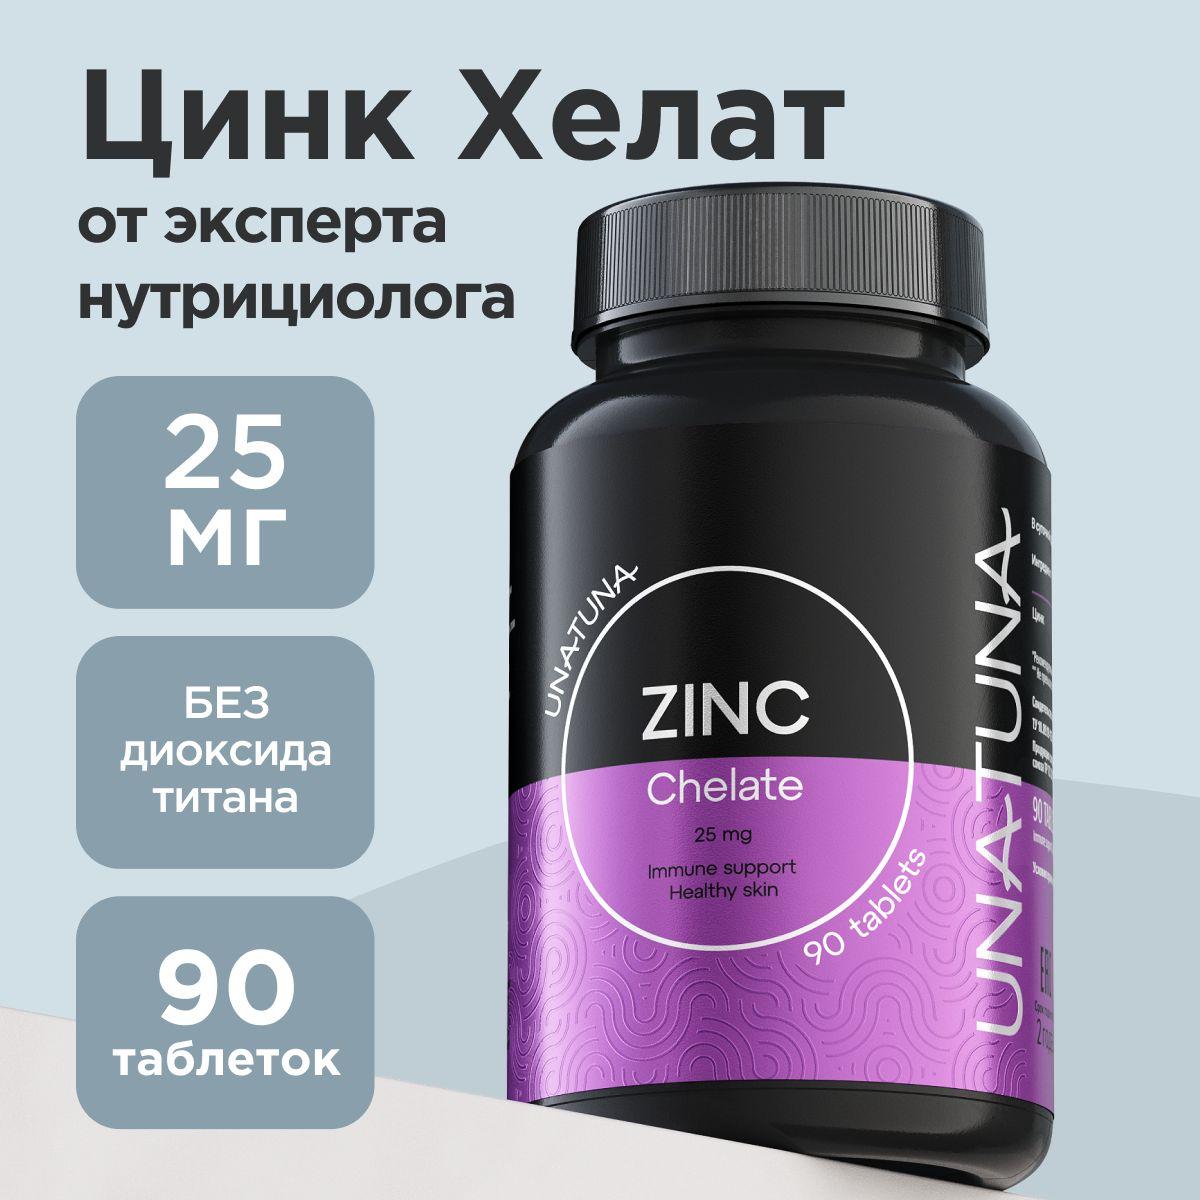 Цинк хелат витамины для волос, кожи, ногтей / витамины и бады для женщин, мужчин Una Tuna UNATUNA 90 таблеток для иммунитета, красоты и здоровья, zinc chelate, 25 мг